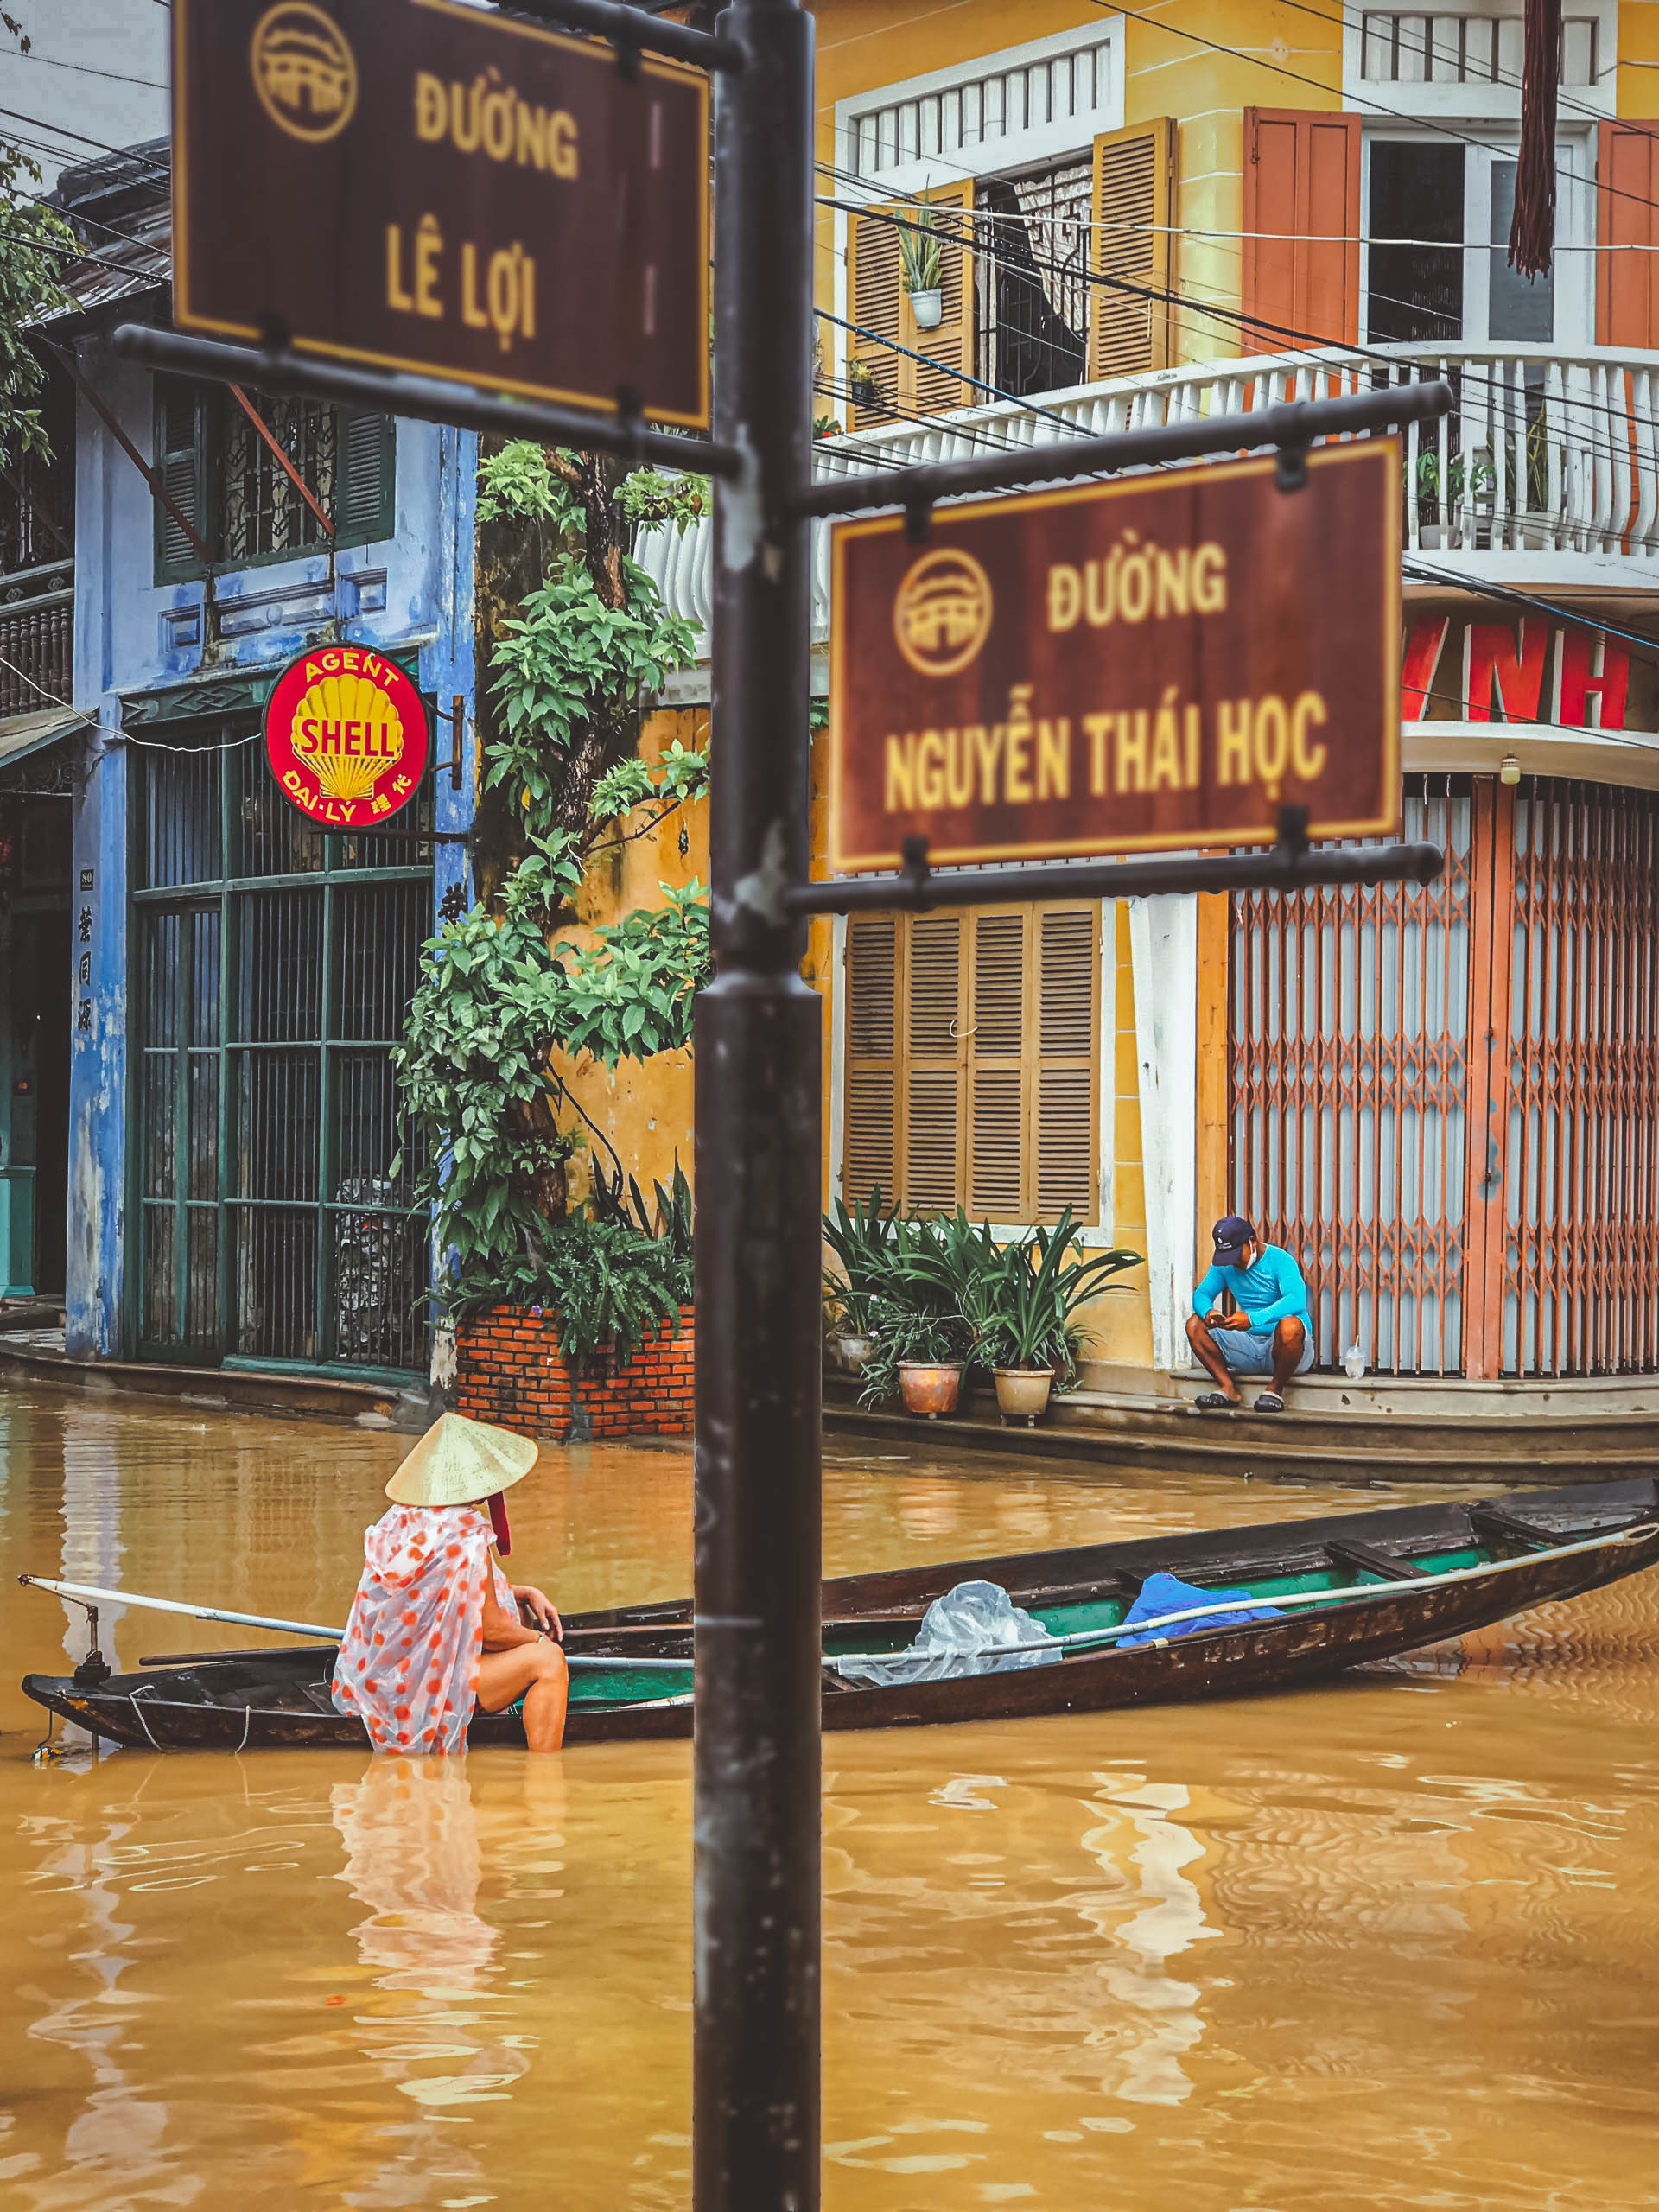 Du lịch Hội An mùa nước lũ: Chèo ván quanh phố cổ, lội nước uống cà phê